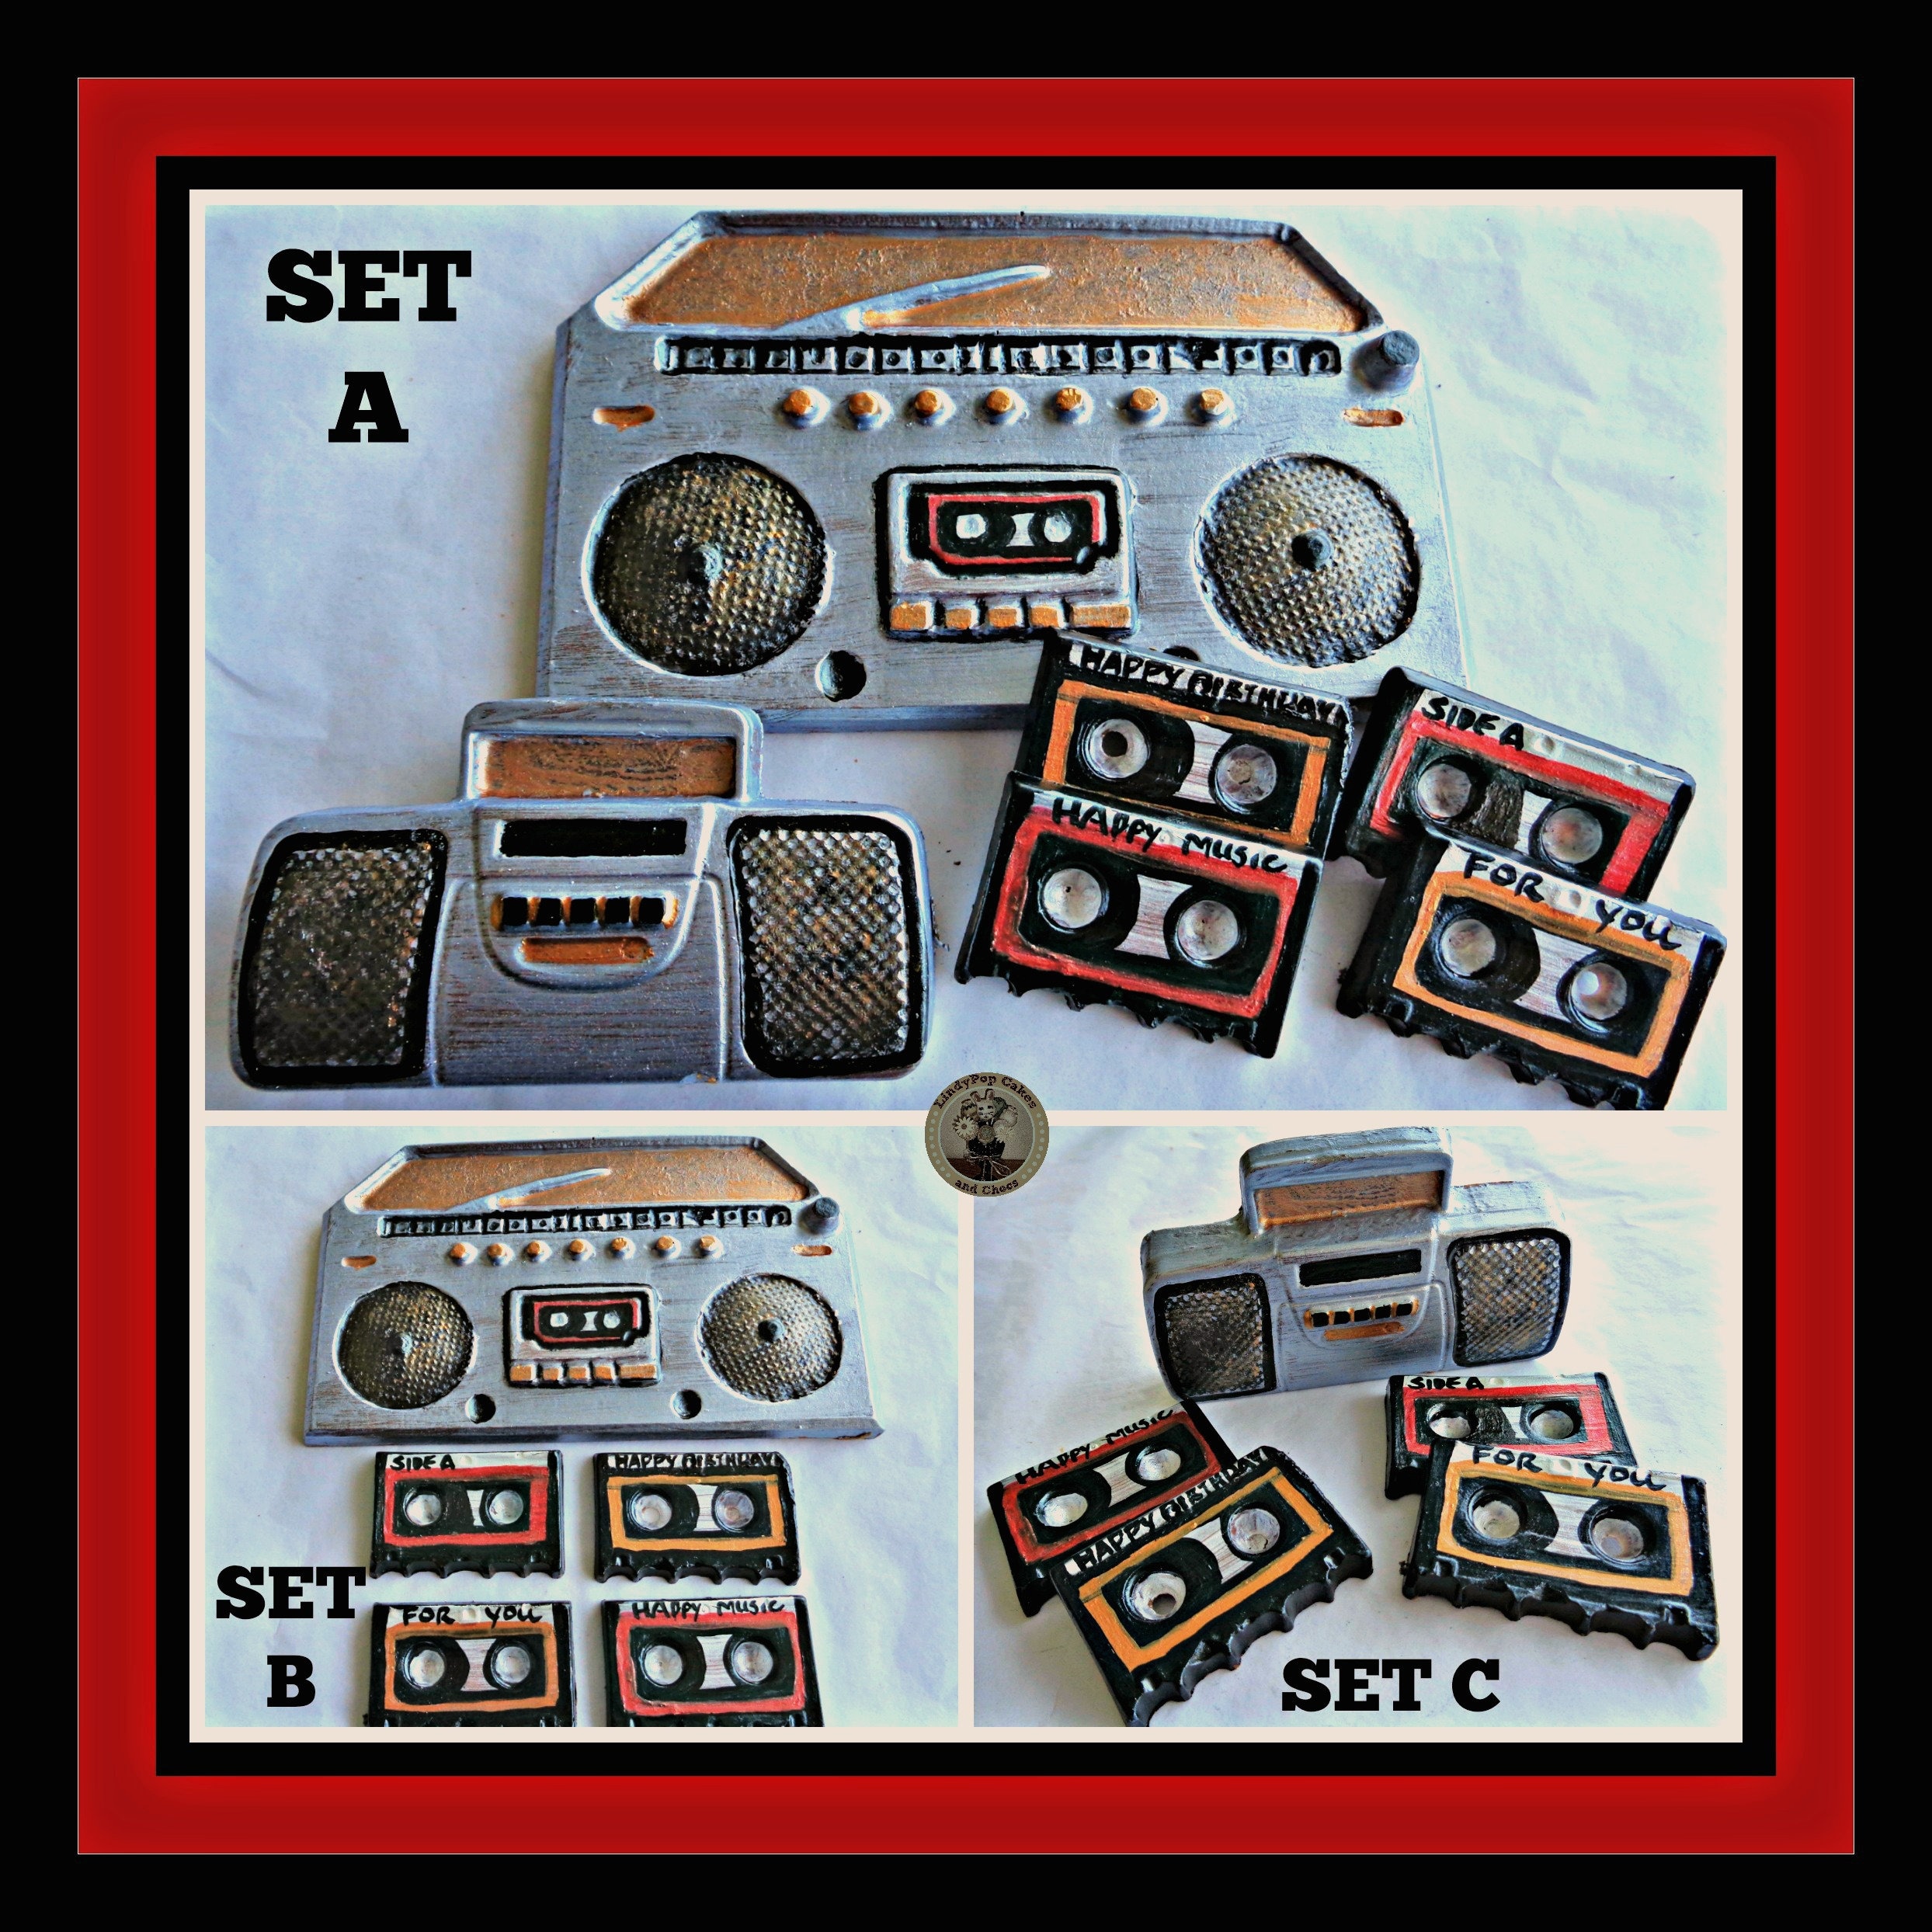 Poste Radio Cassette Rétro Gonflable 36x27 cm - accessoires années 80